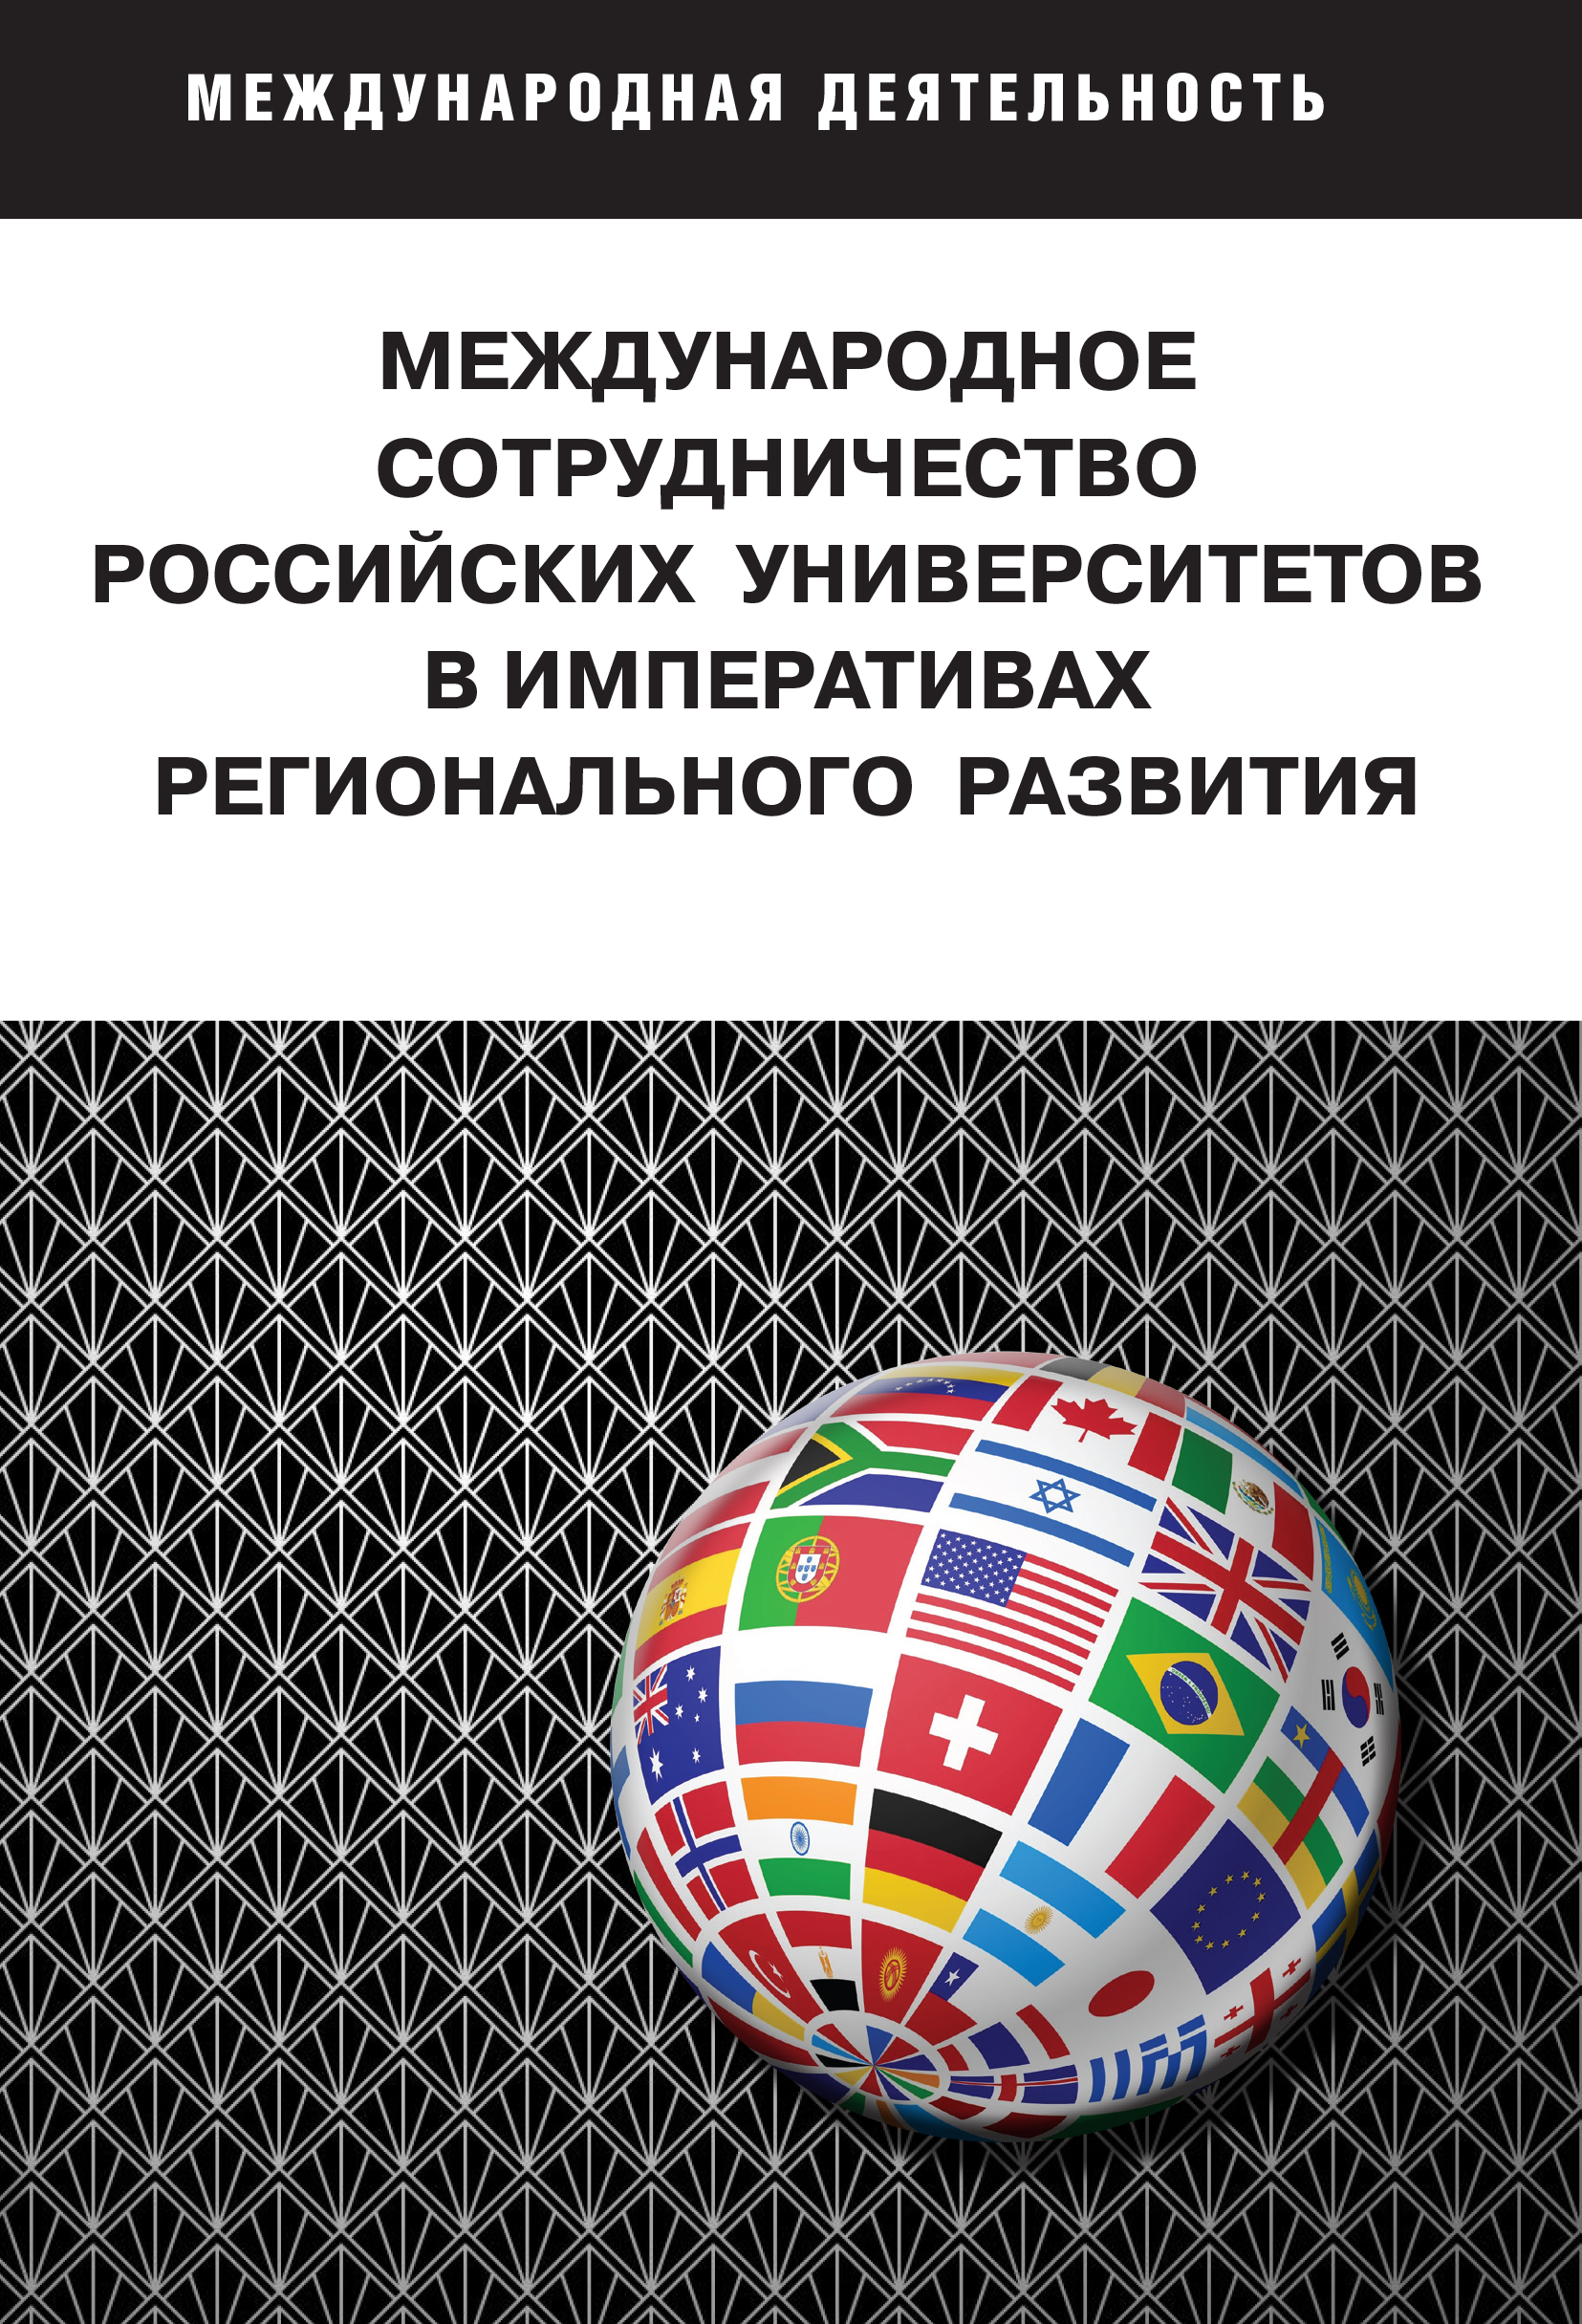             Международное сотрудничество российских университетов в императивах регионального развития
    